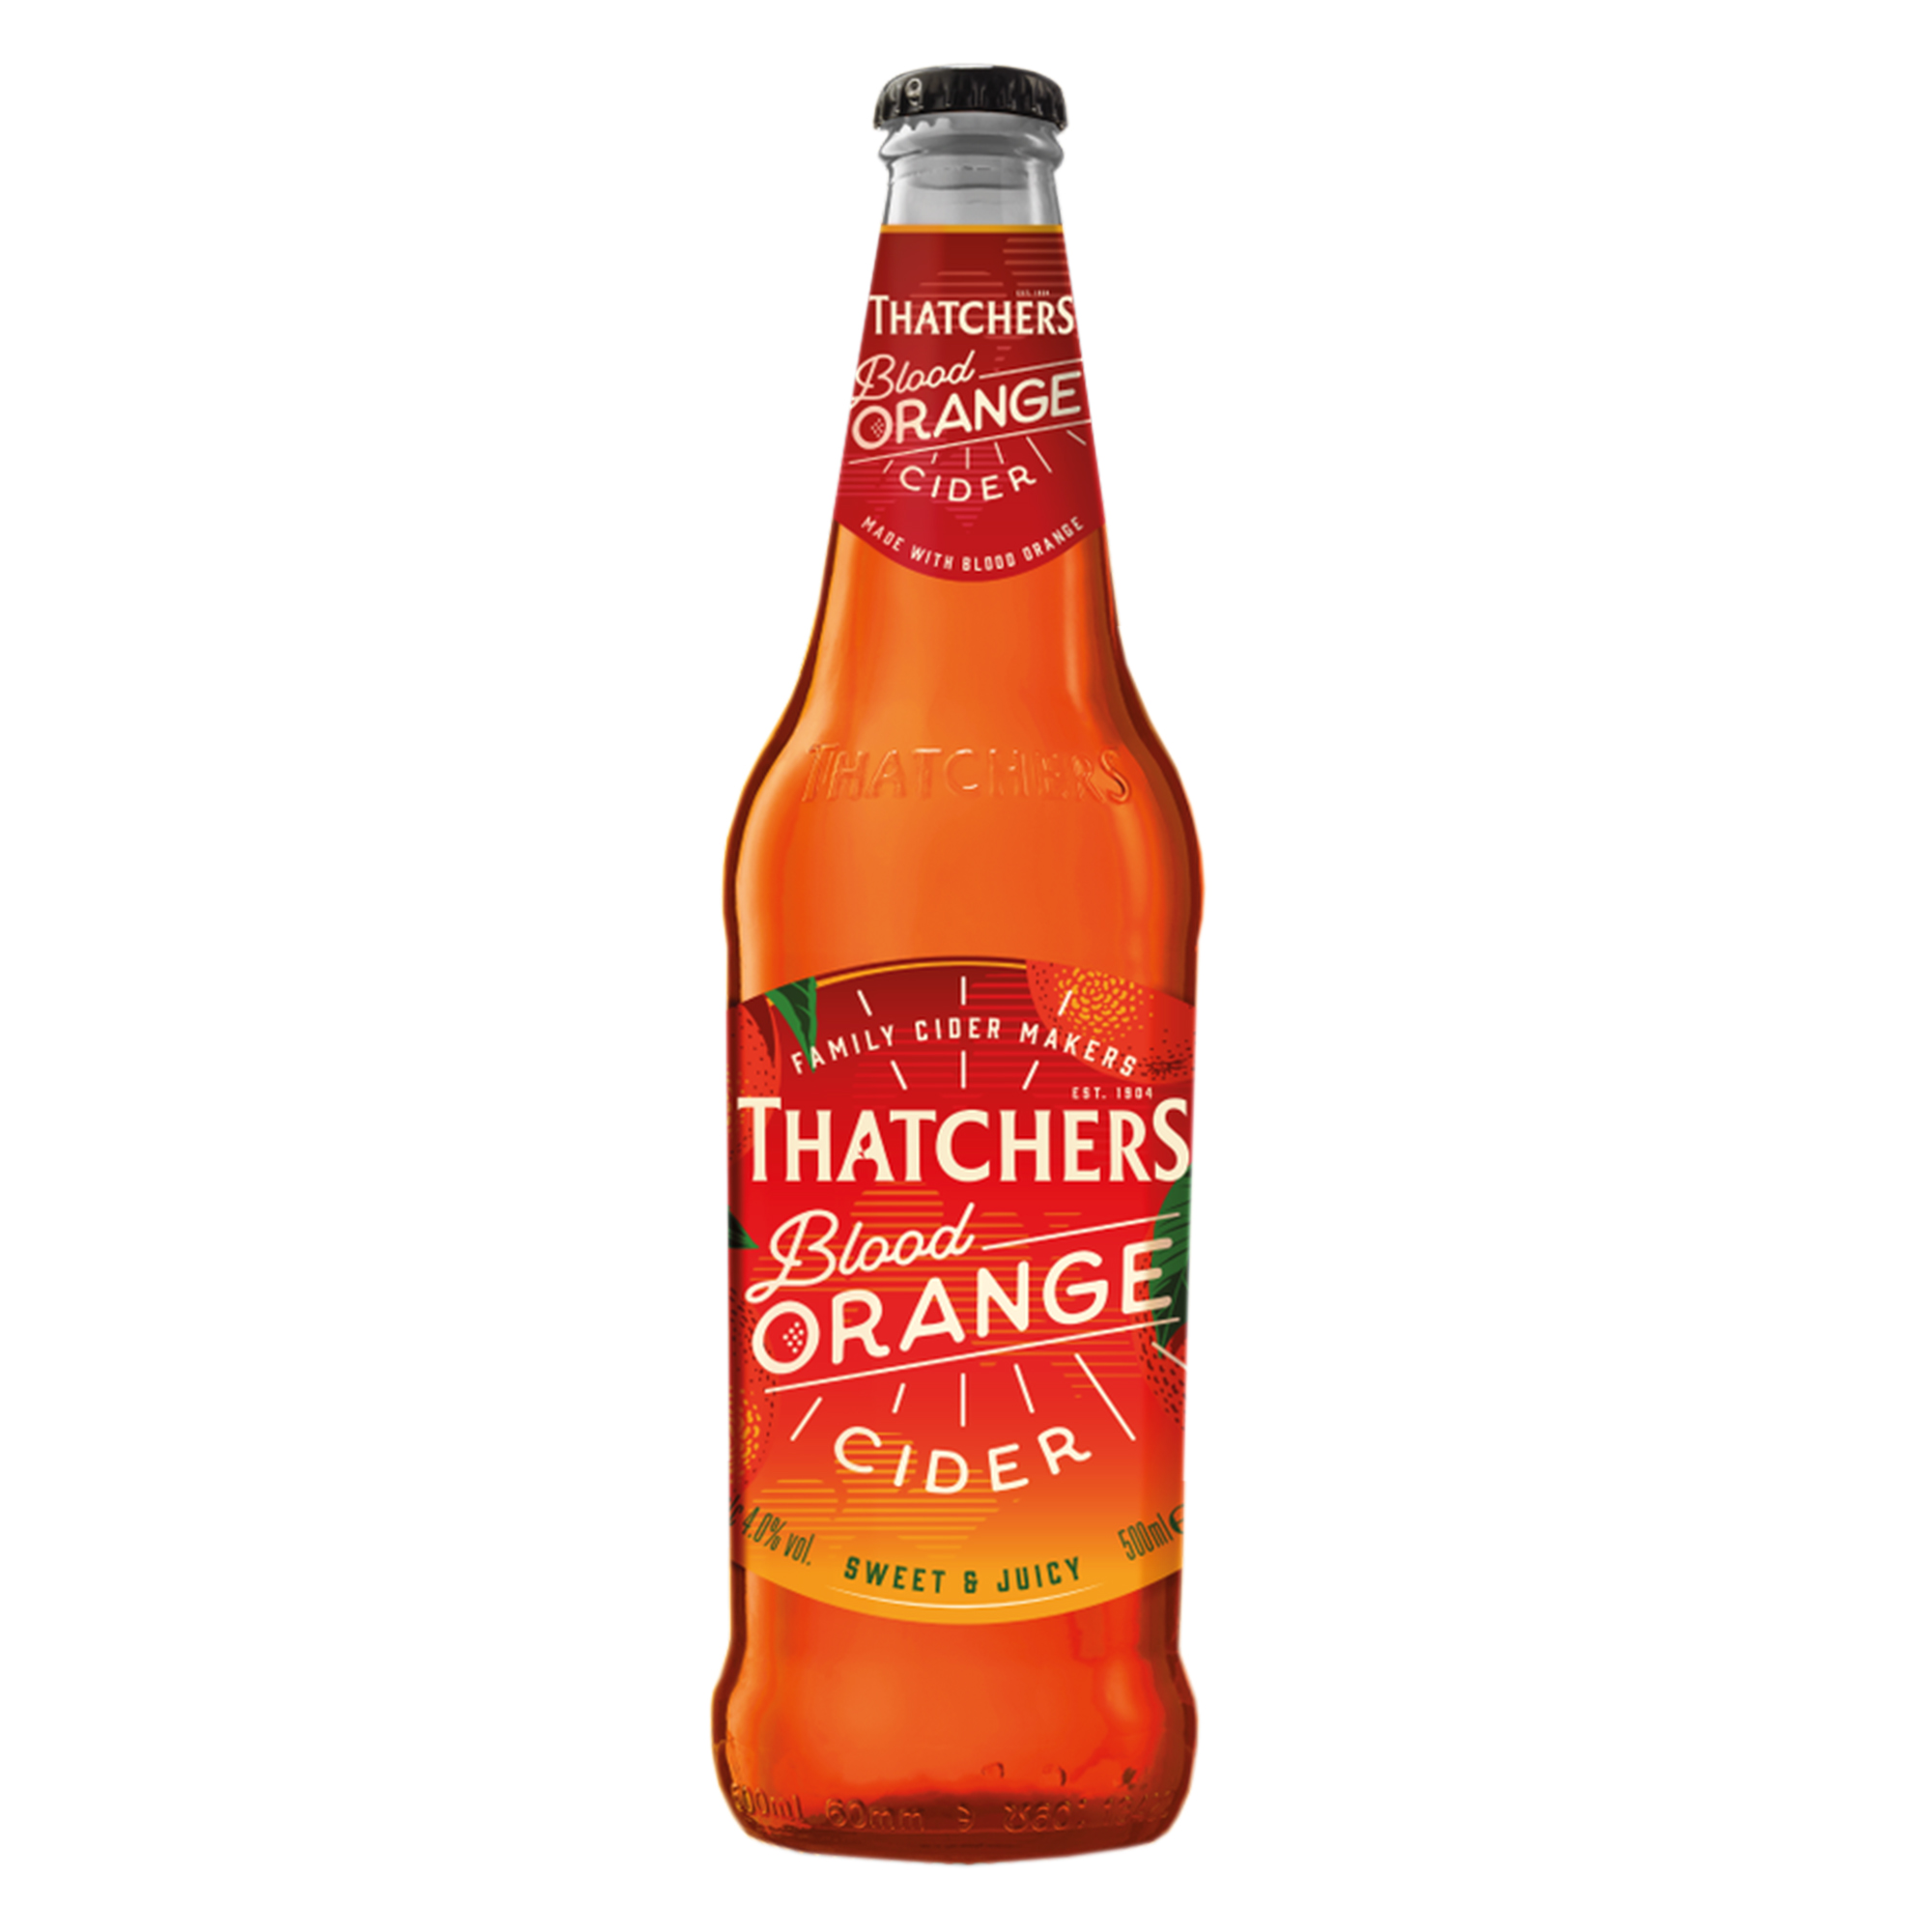 Thatchers Blood Orange Cider 500ml